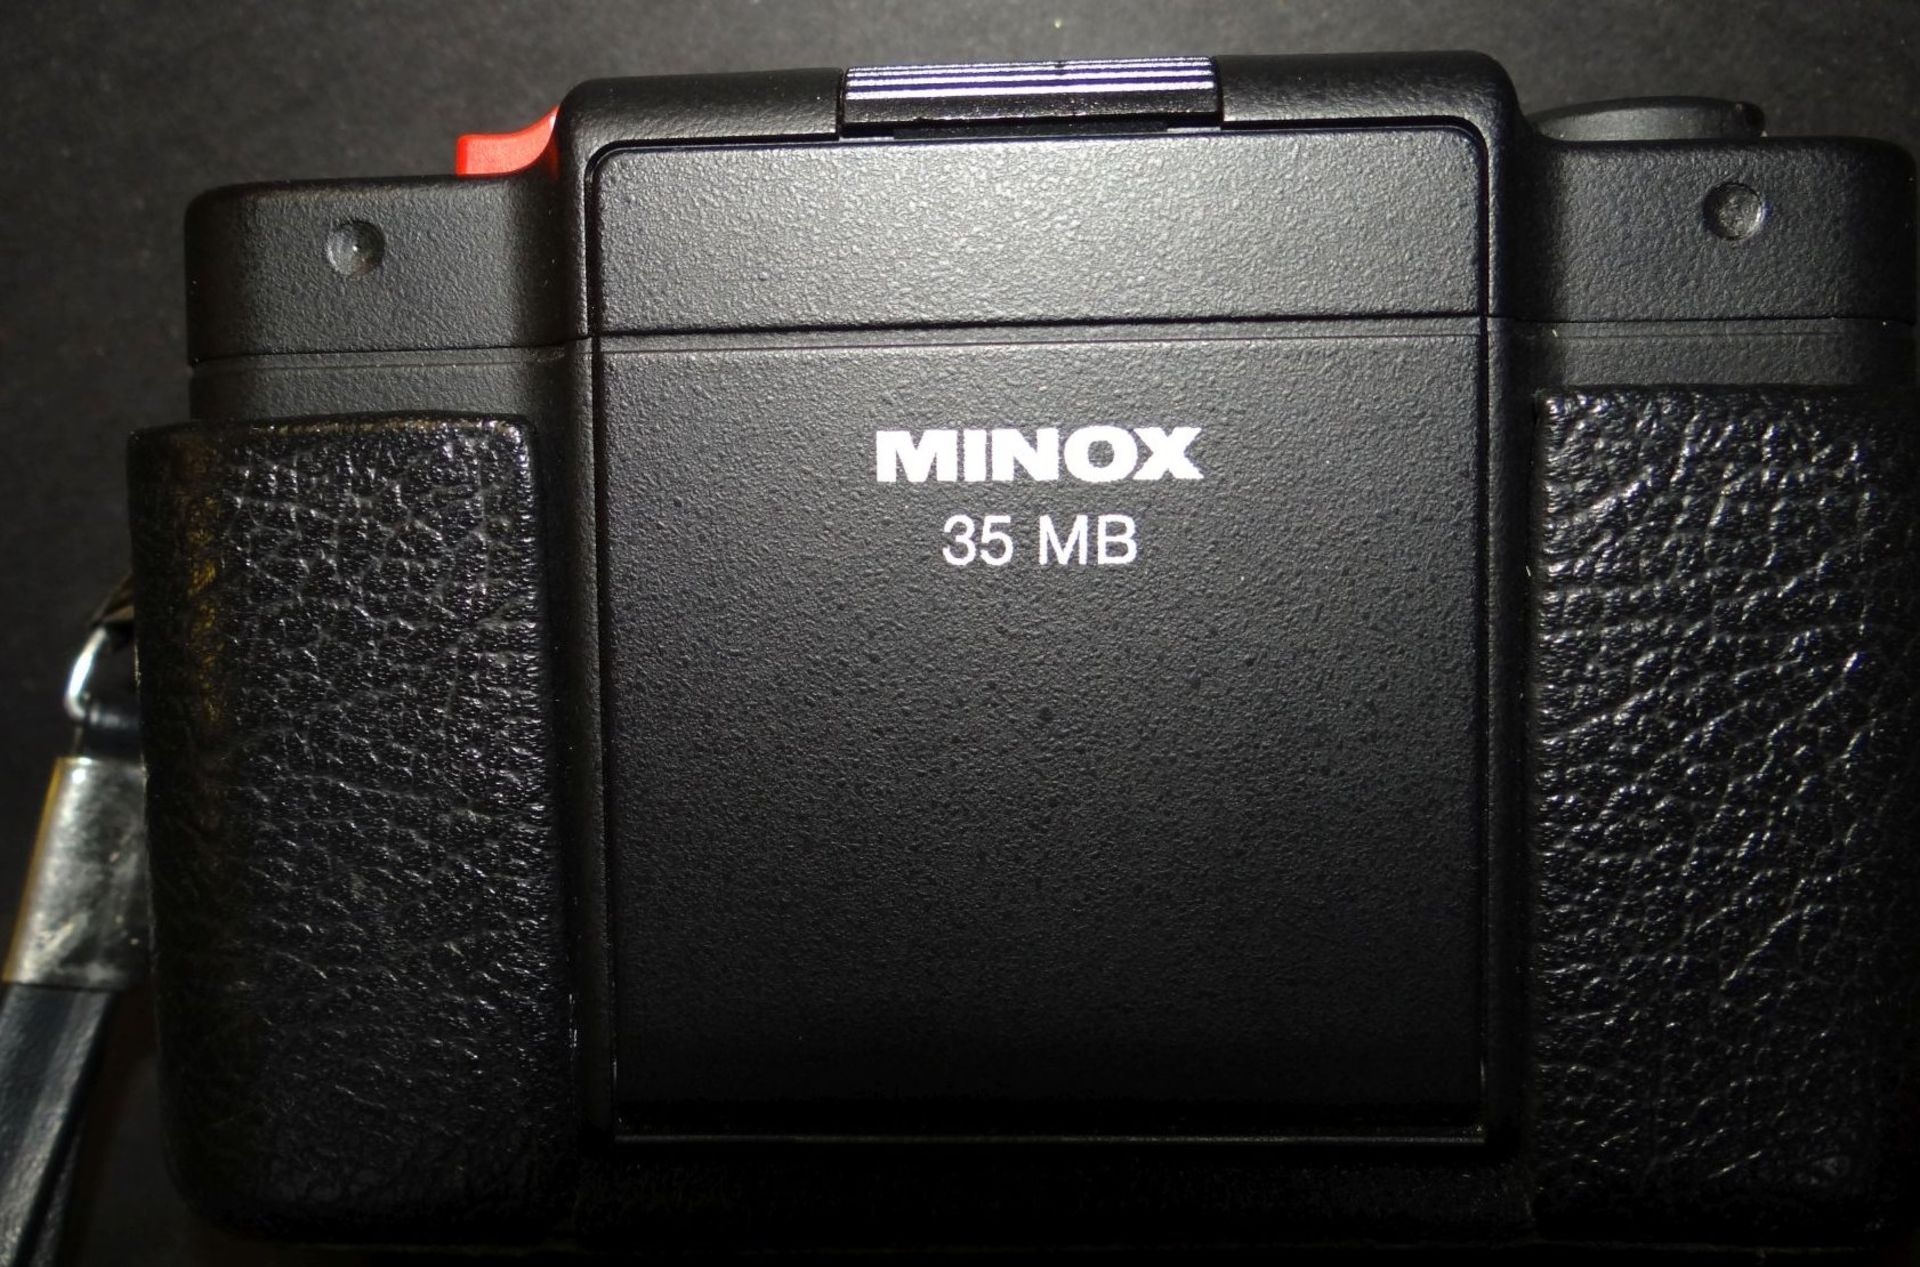 Fotoapparat "Minox 35 MB" in Tasche